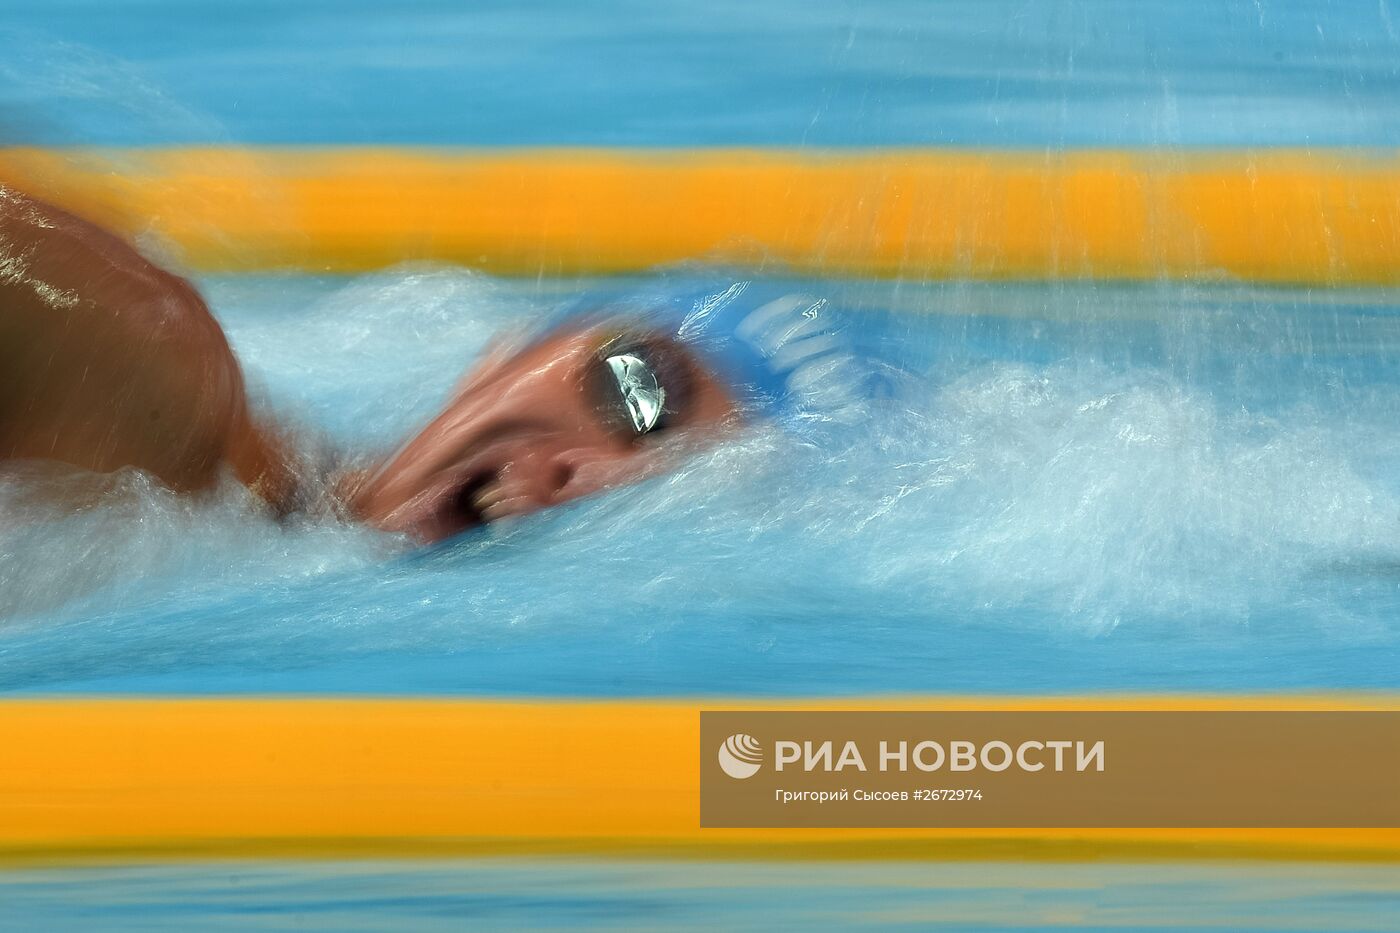 Чемпионат мира FINA 2015. Плавание. Третий день. Утренняя сессия